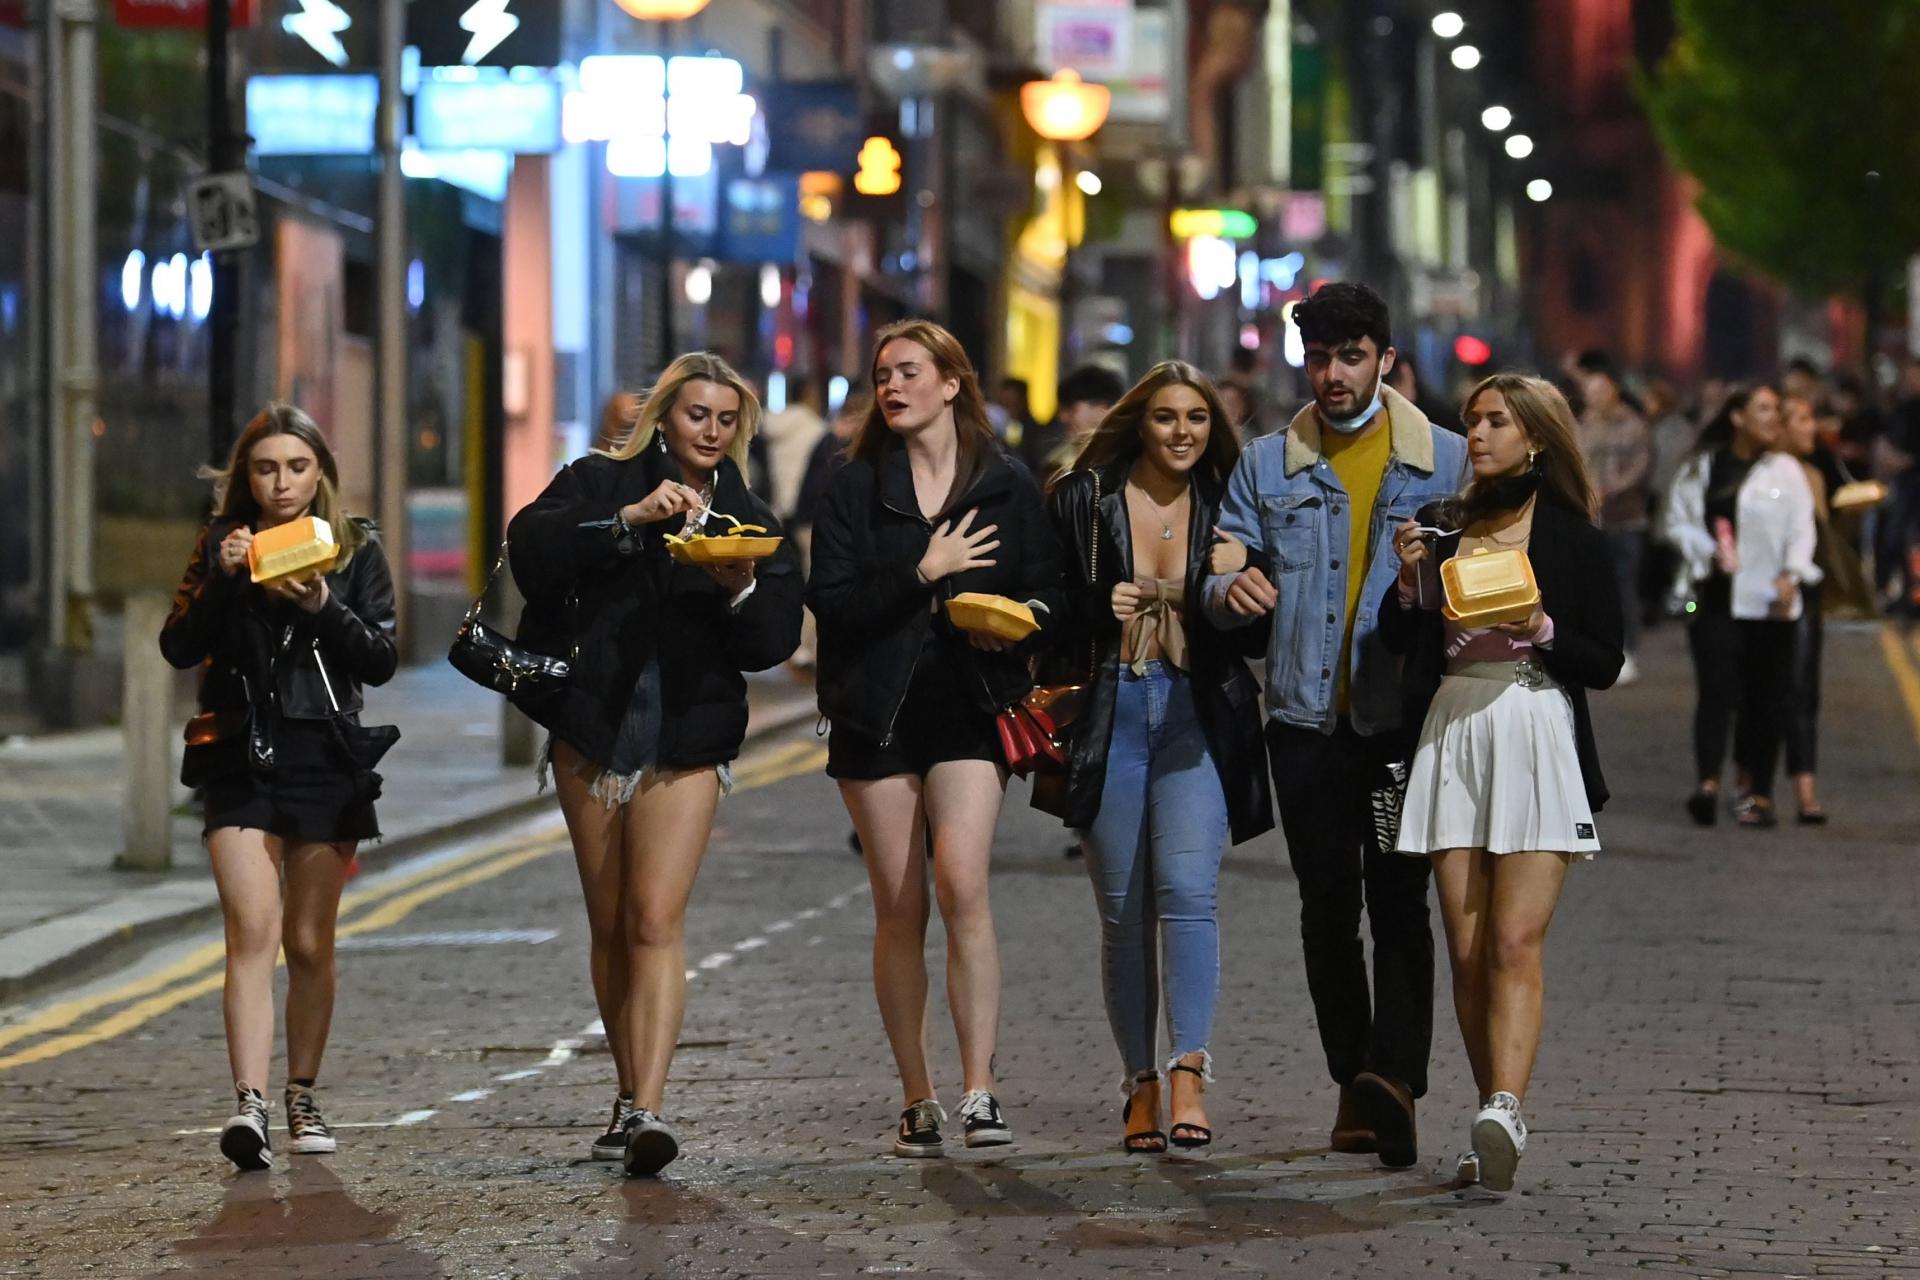 Crowded street. Англия люди на улицах. Ливерпуль девушки на улицах. Женщины Англии на улице. Англичане фото на улице.